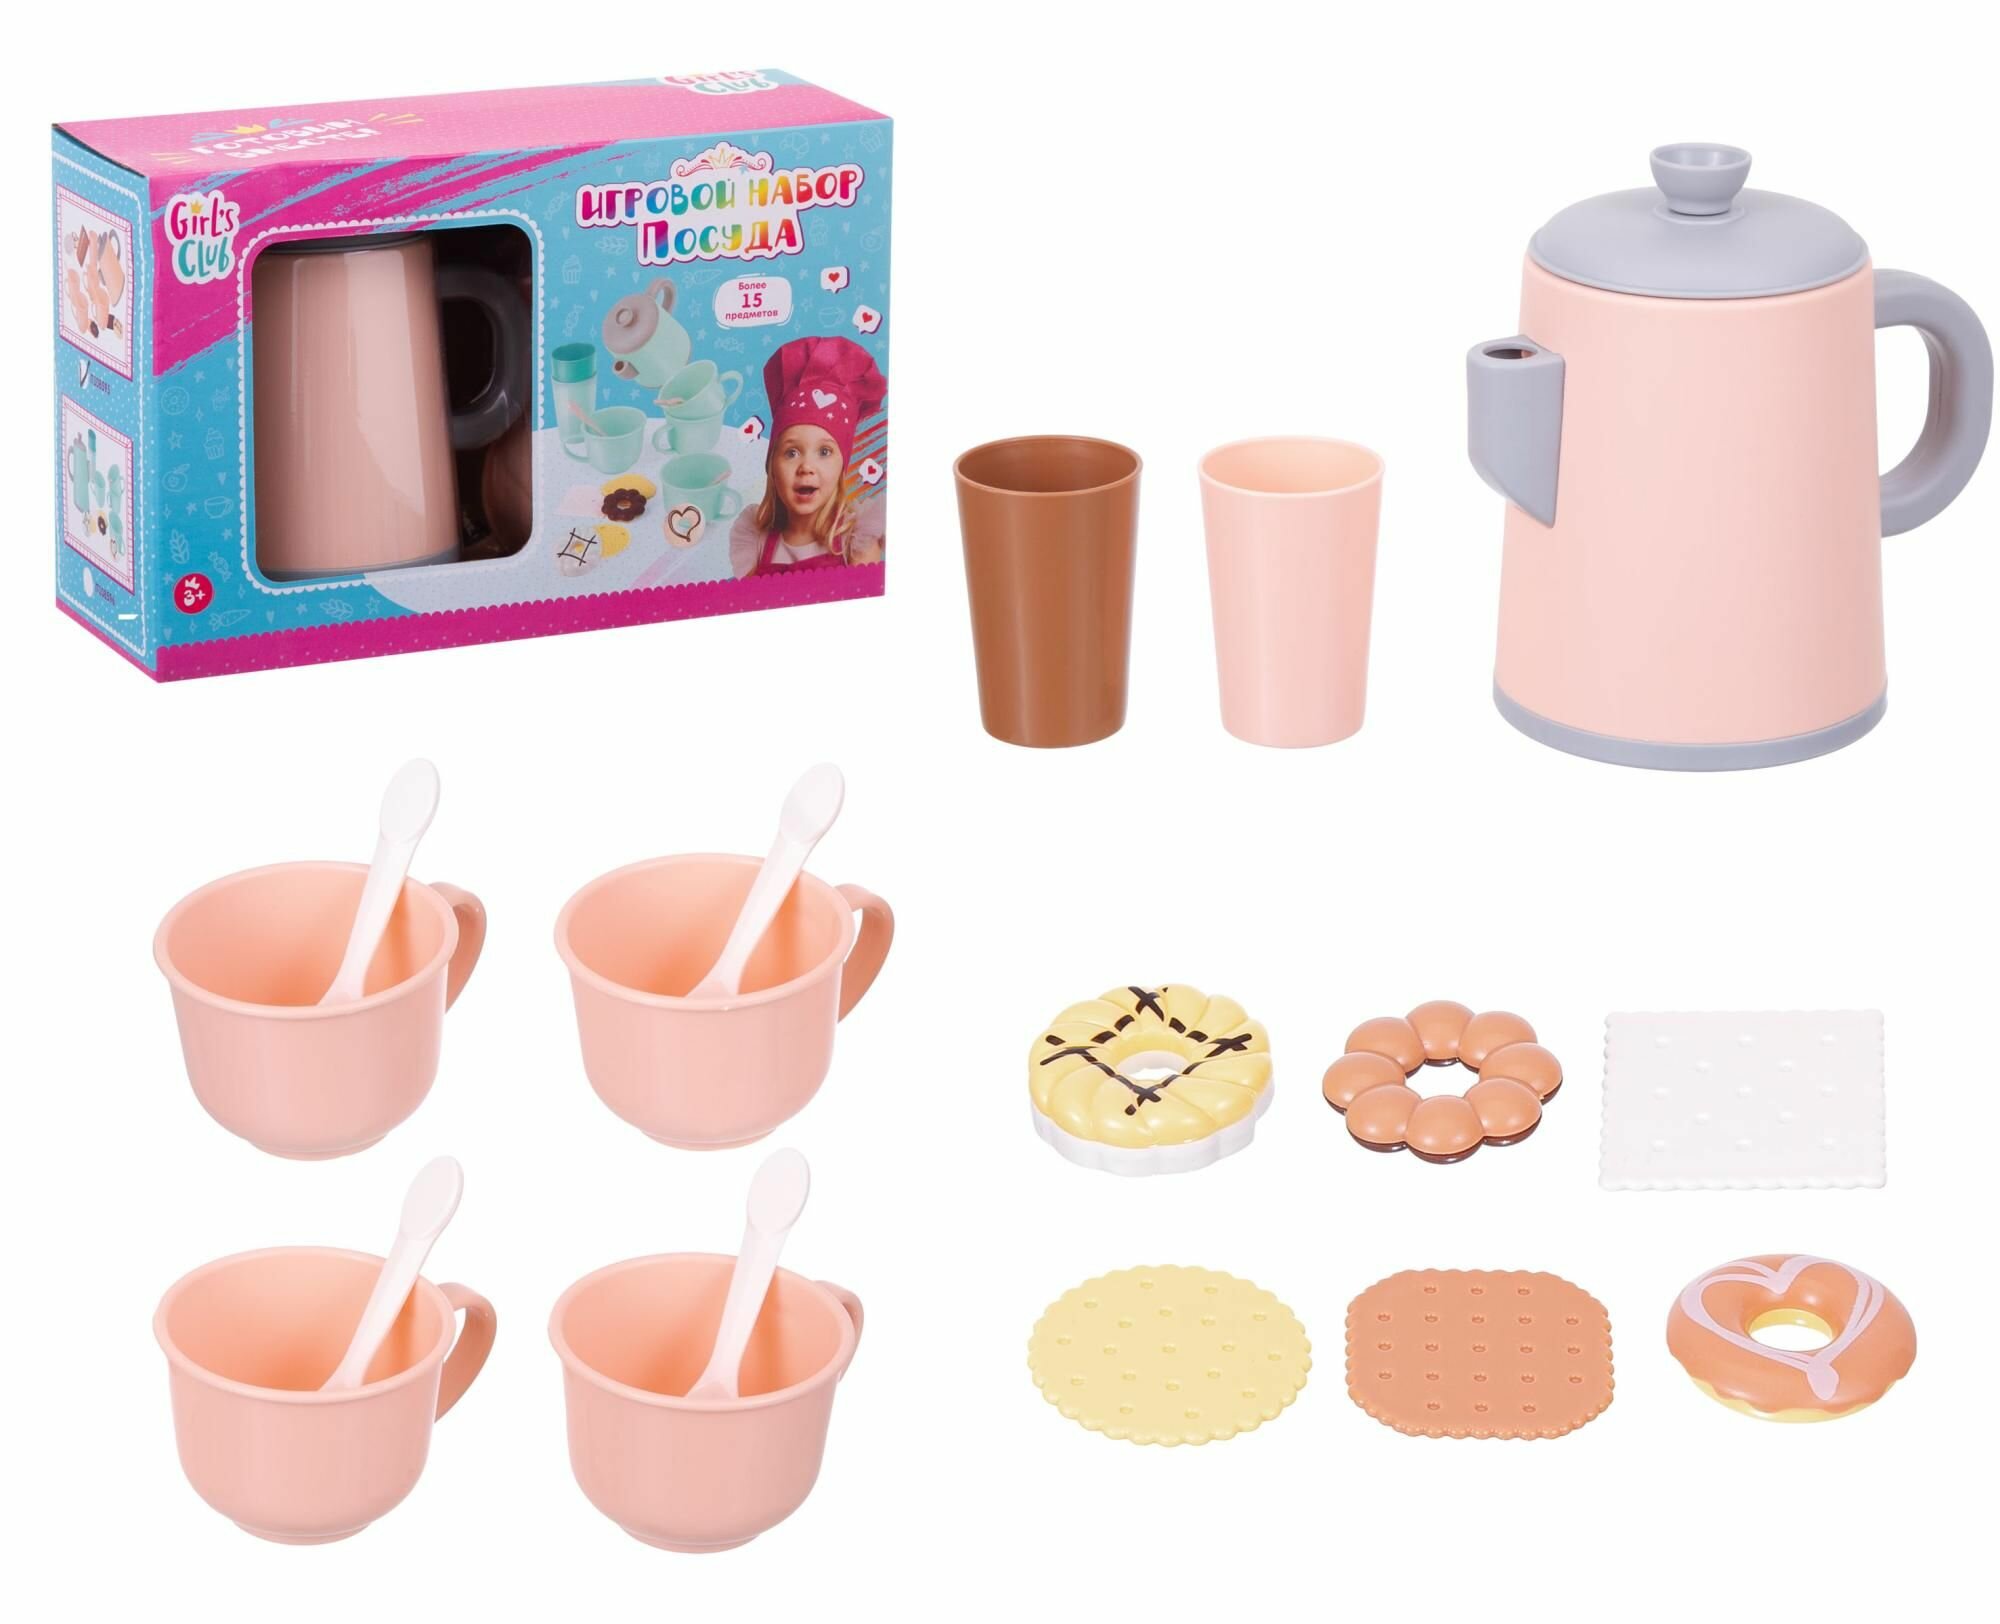 Girl's Club Игровой набор Посуда, розовый, 17 предметов, 23х12х14 см